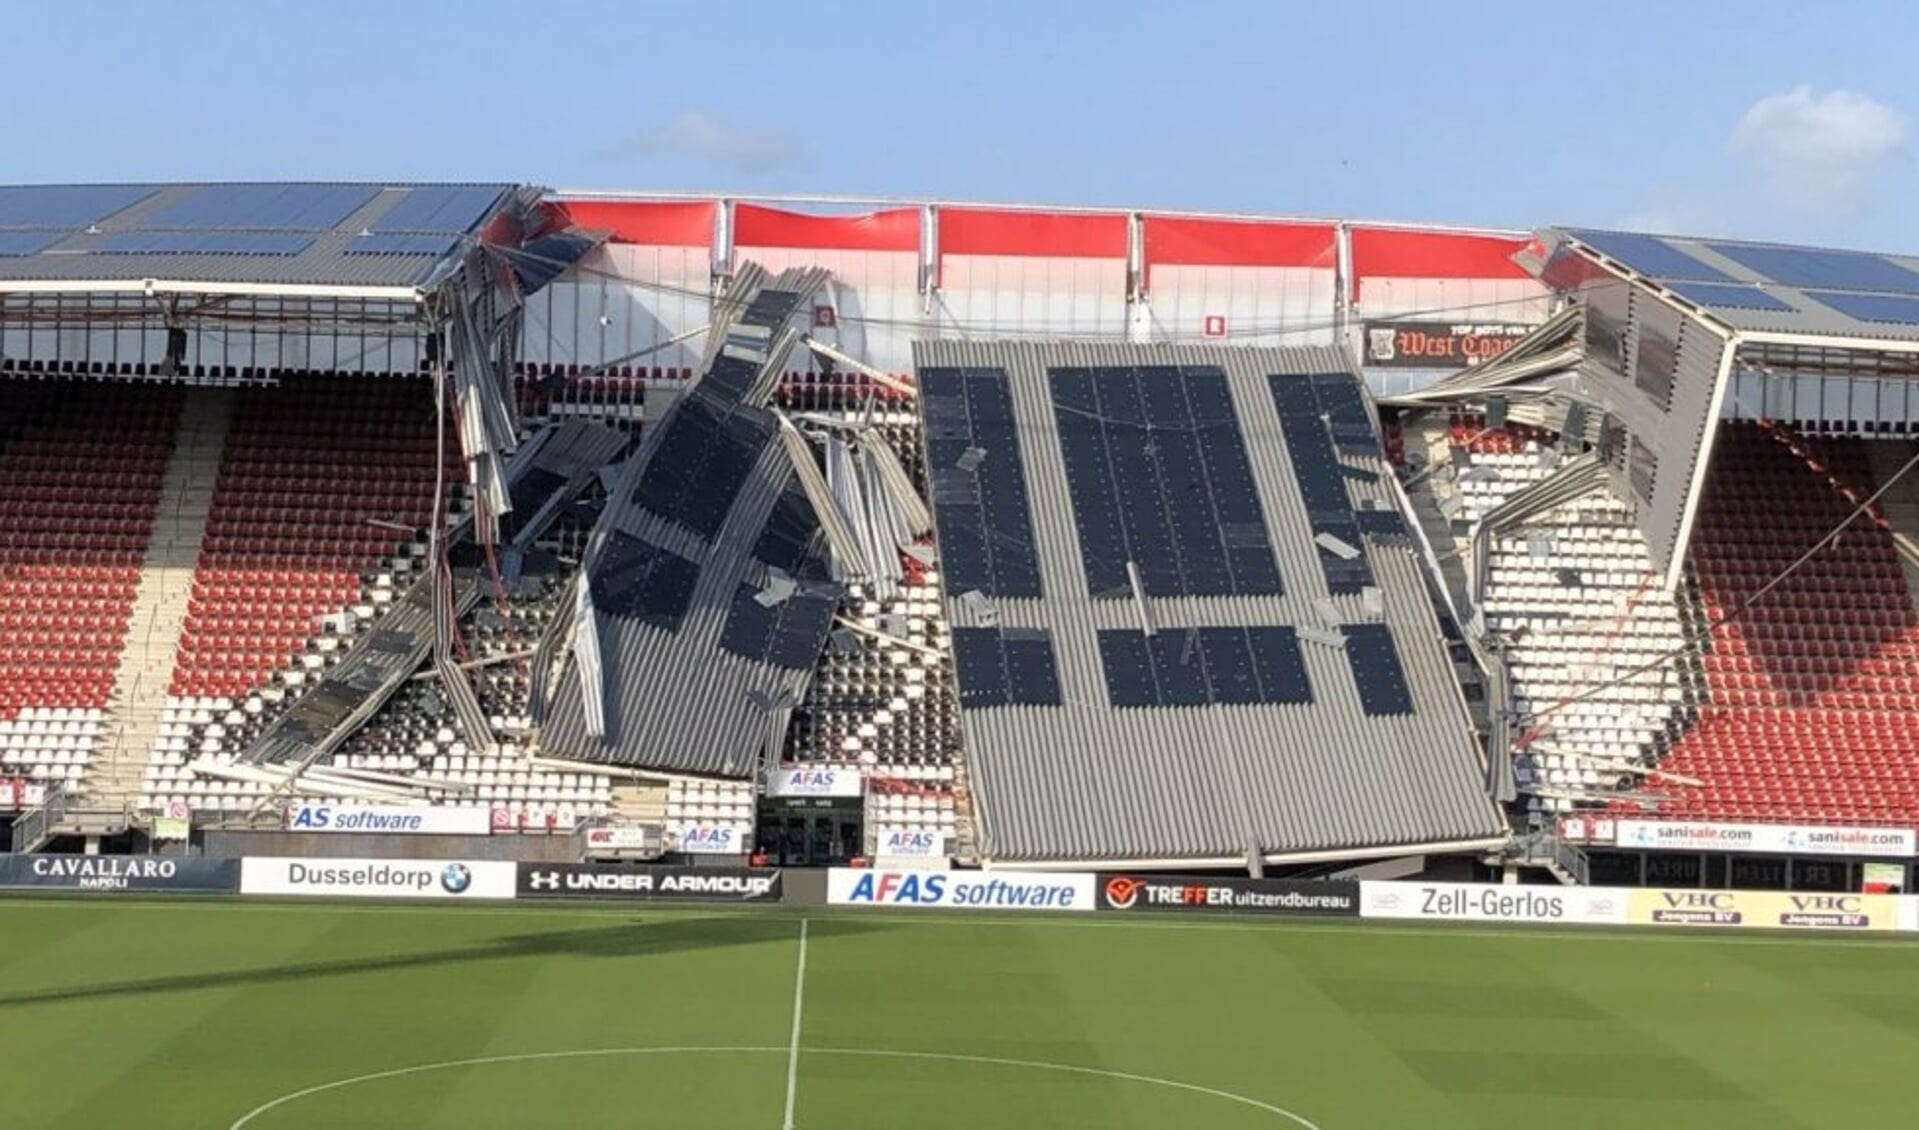 De ravage is enorm nadat een deel van het dak van het AZ-stadion door de storm naar beneden kwam.